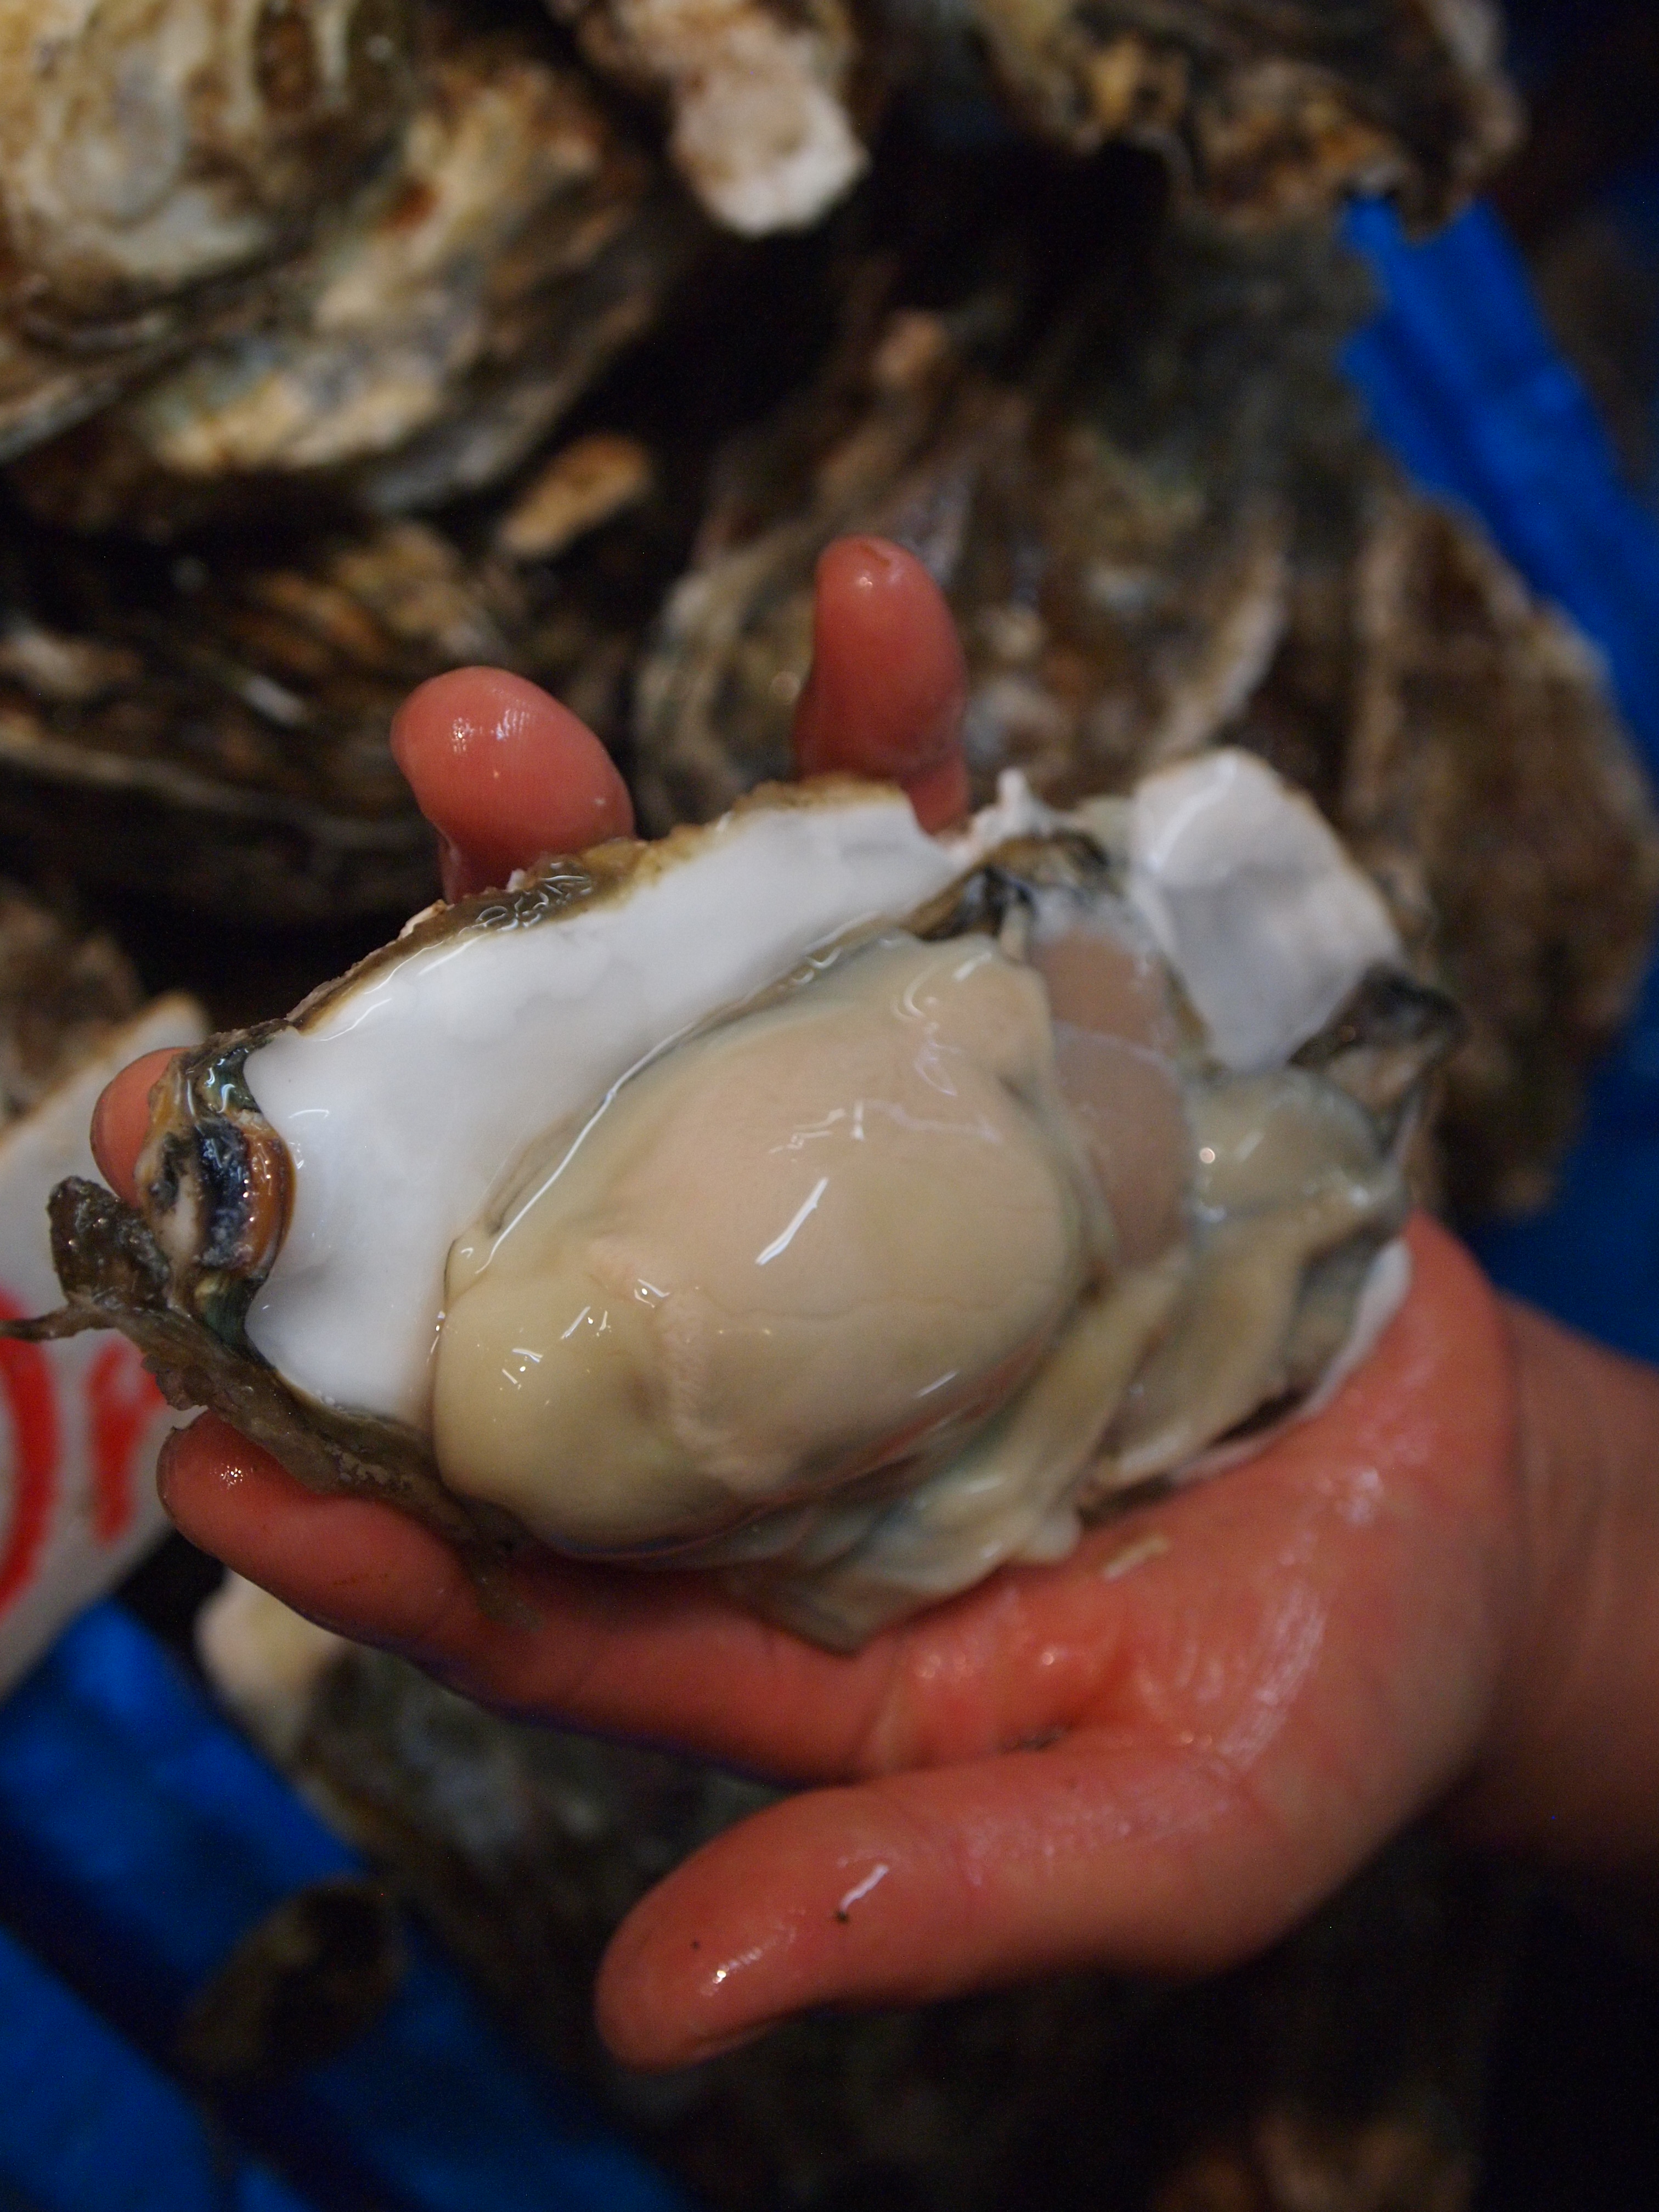 牡蛎是松岛的名产，在这里我们可以吃到新鲜捕捞的牡蛎，肉质肥美多汁，令人赞不绝口！